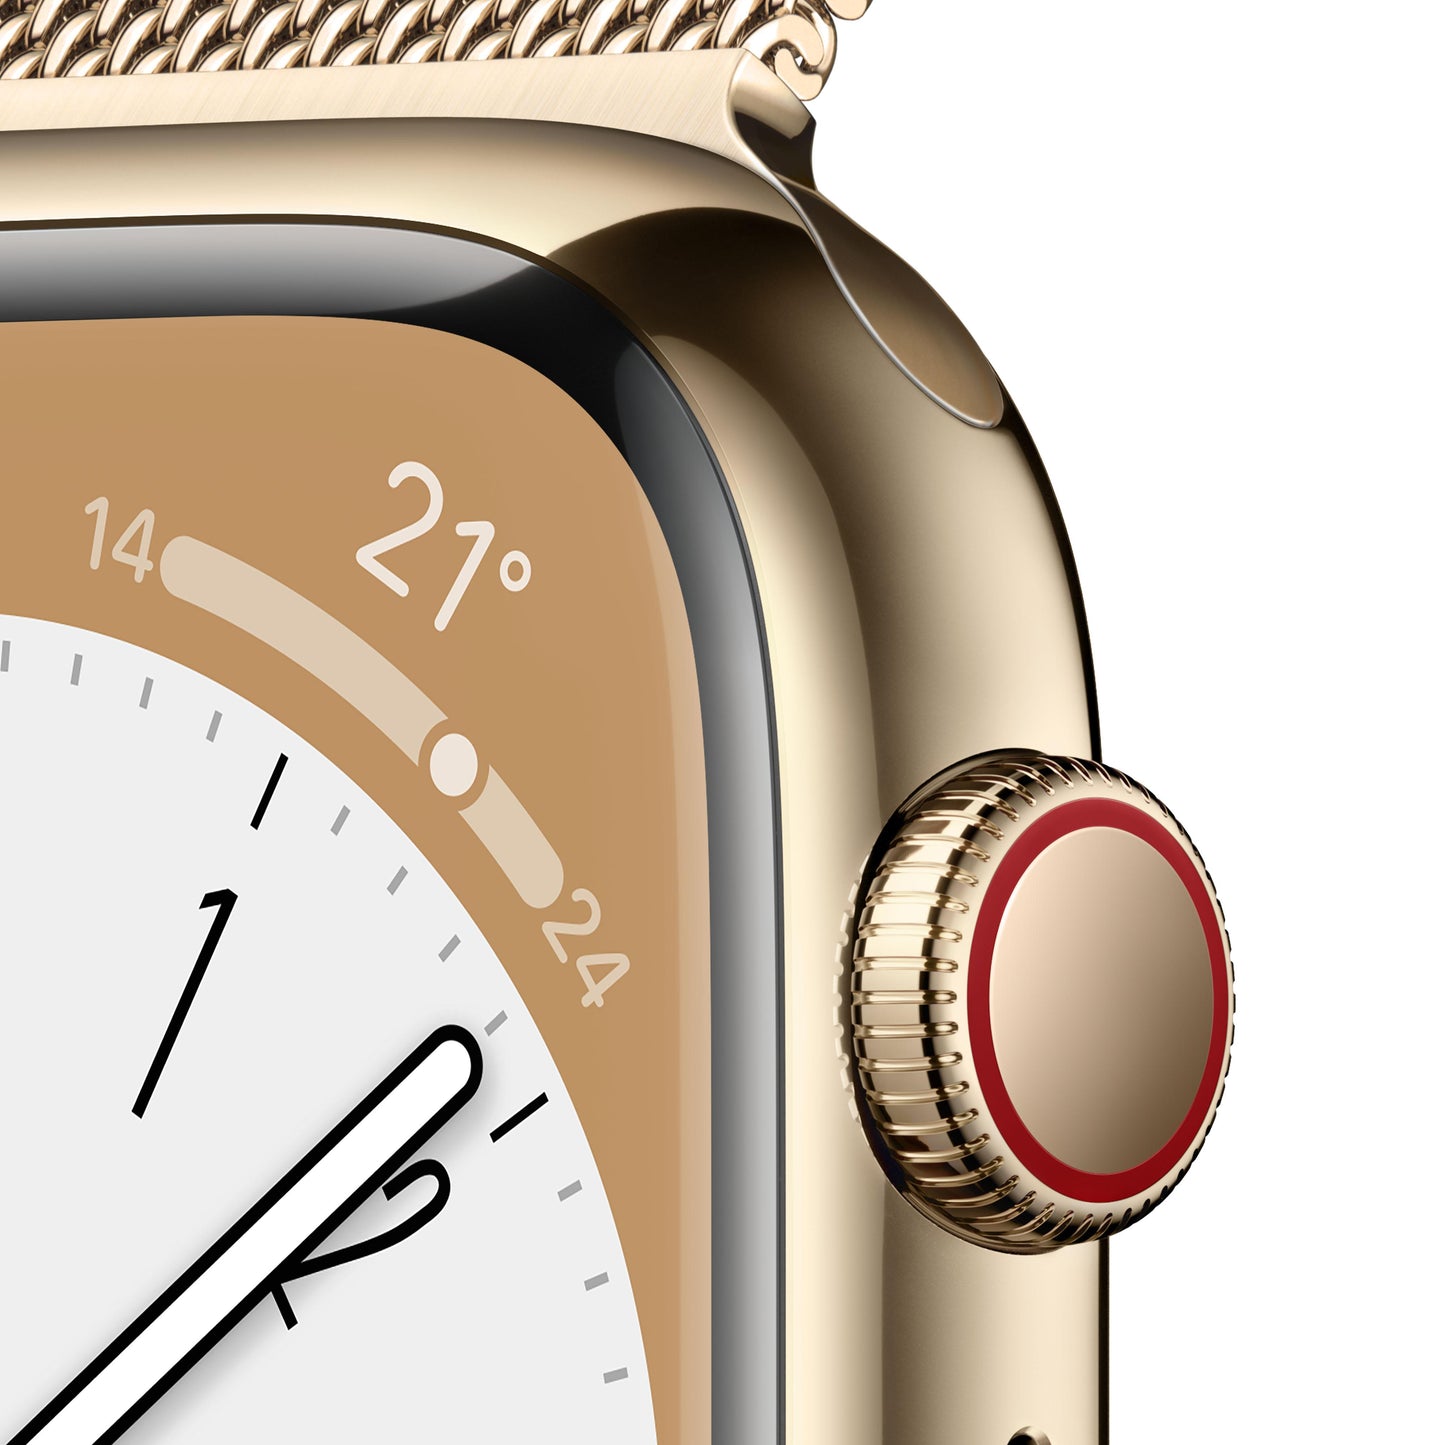 Apple Watch Series 8 (GPS + Cellular) - Caja de acero inoxidable en oro de 45 mm - Pulsera Milanese Loop en oro